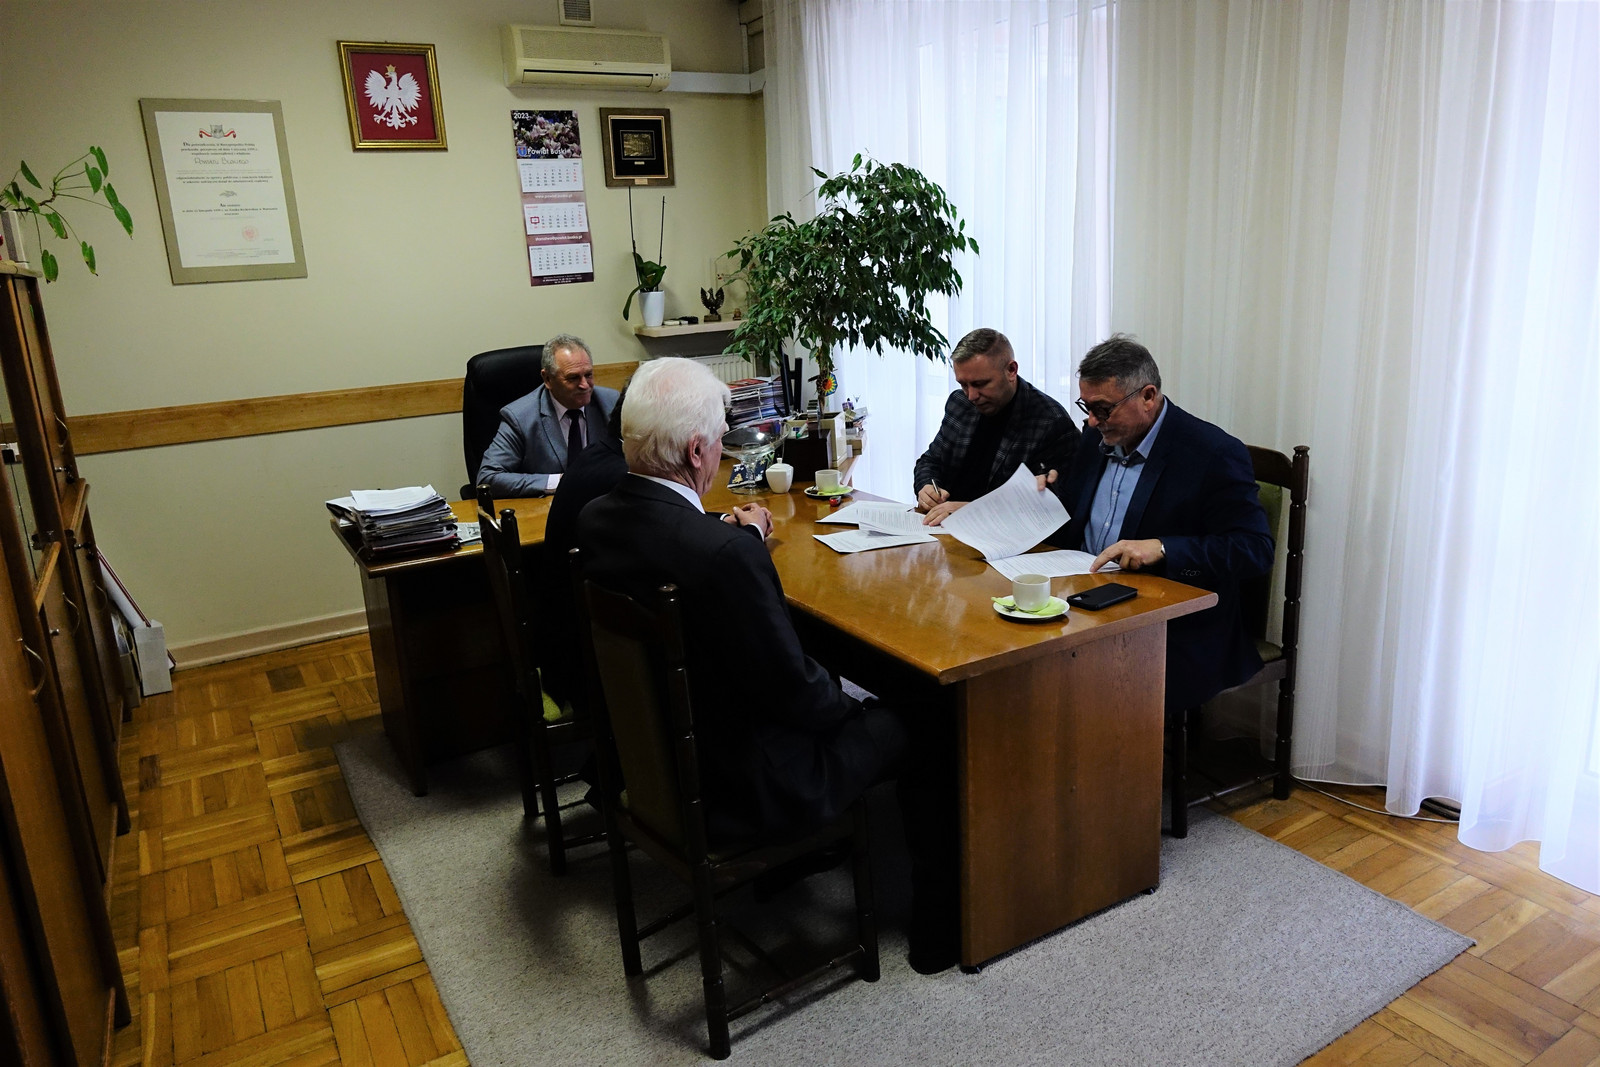 Podpisanie umowy, na zdjęciu widoczni od lewej strony Burmistrz M. i G. Stopnica R. Zych, Starosta Buski J. Kolarz, przedstawiciel Wykonawcy P. Cieśla, Dyrektor PZD K. Tułak